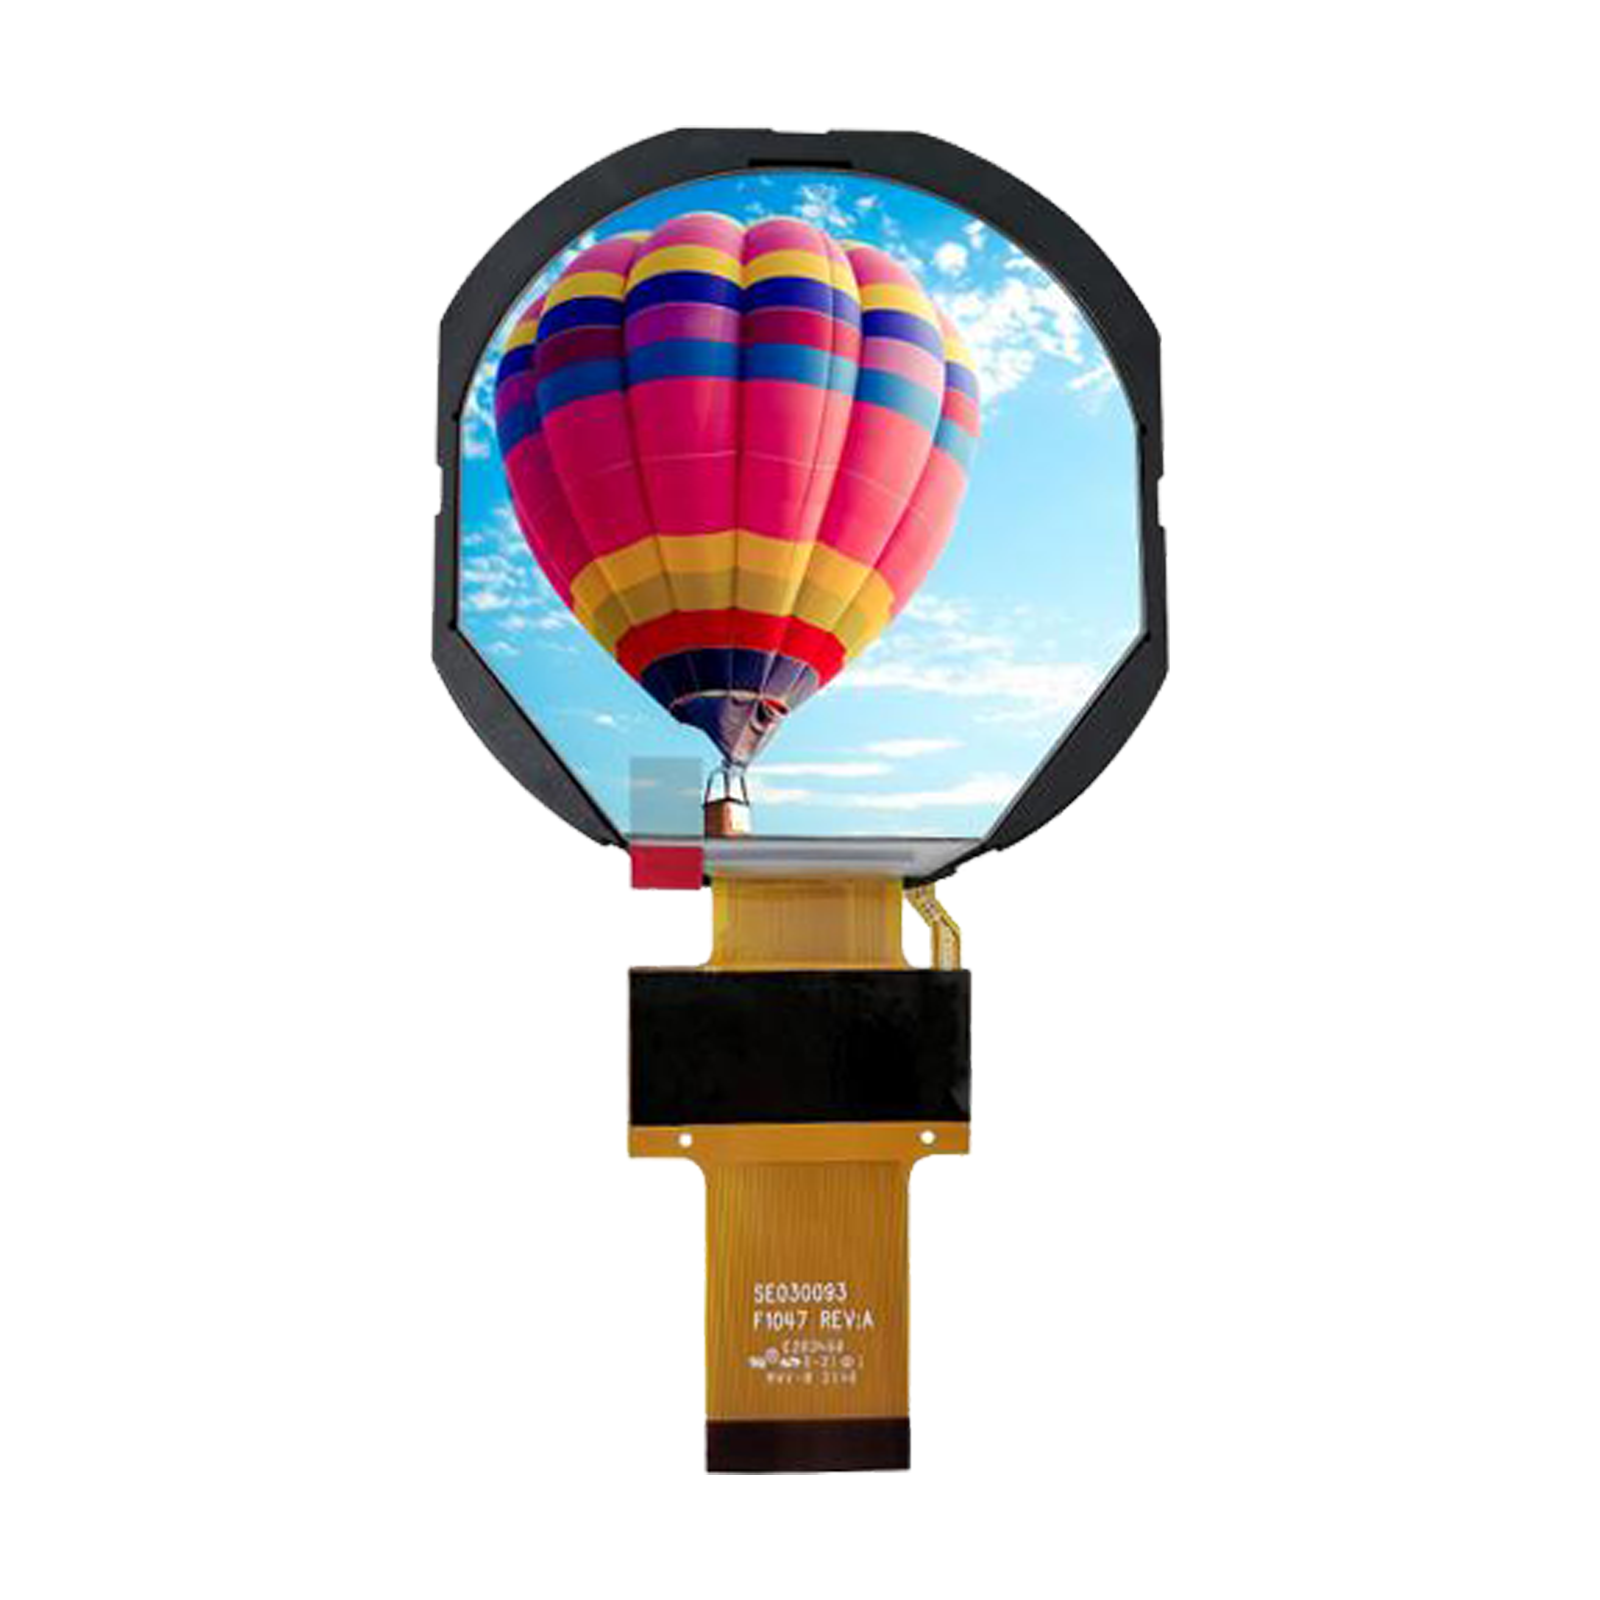 3-inch circular TFT screen displaying a hot air balloon